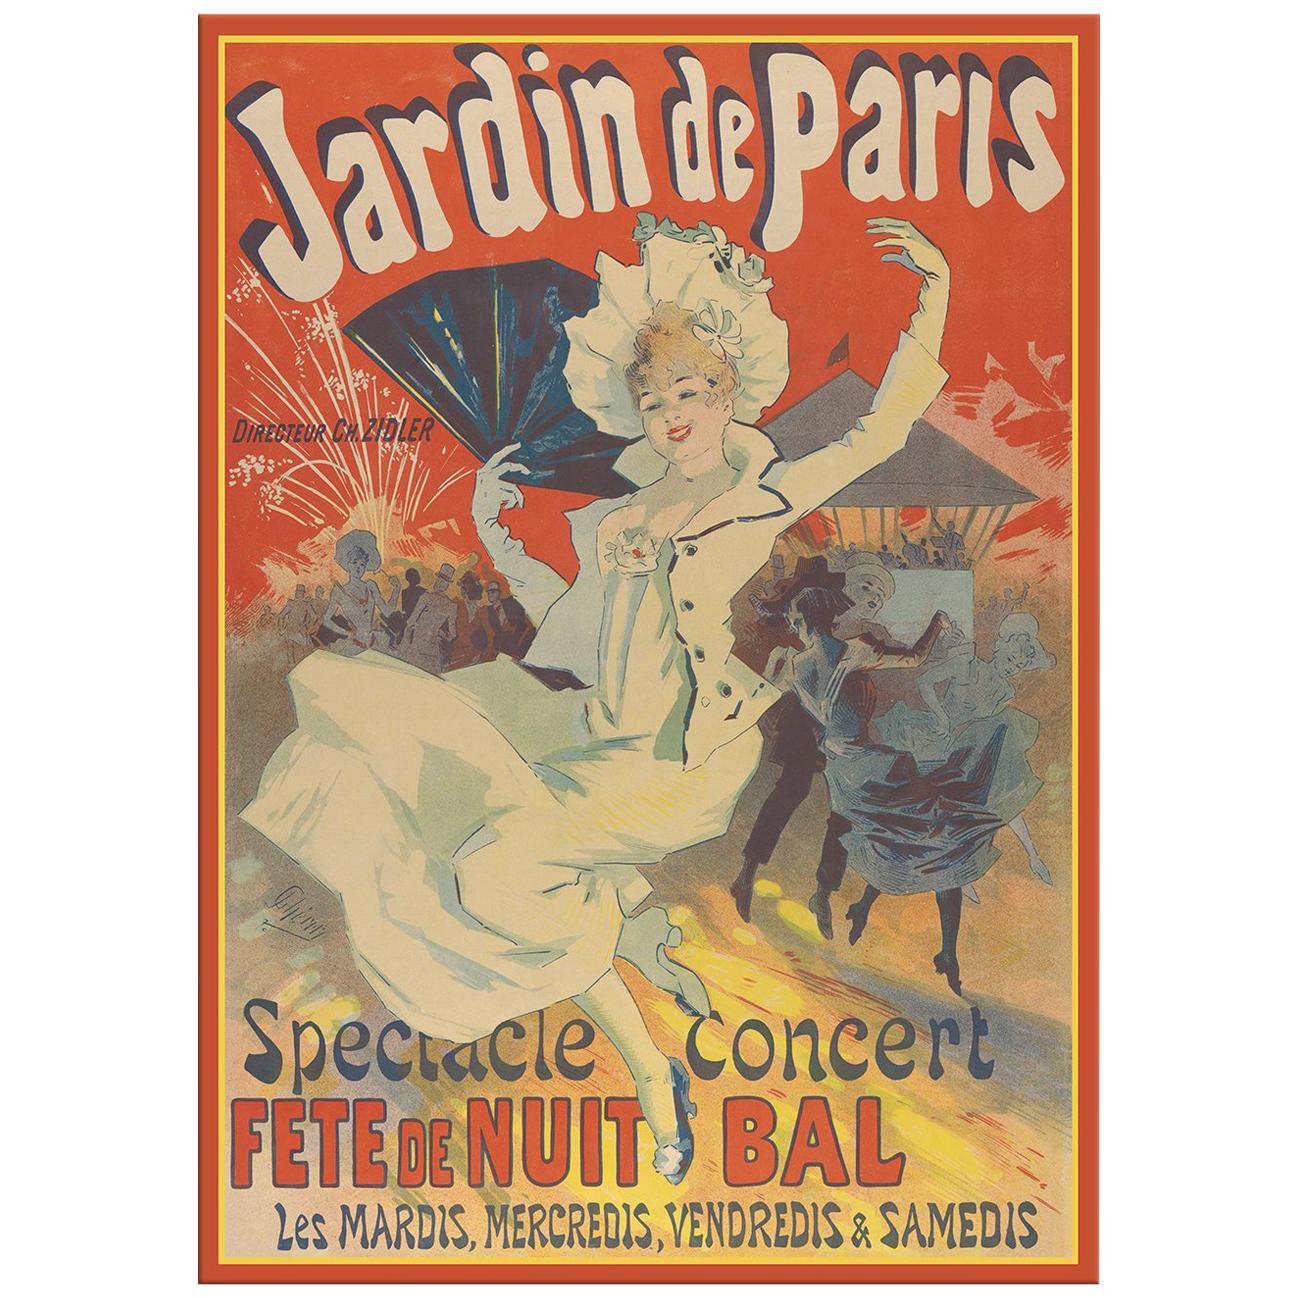 Jardin de Paris, after Vintage Art Poster, Belle Époque Era For Sale